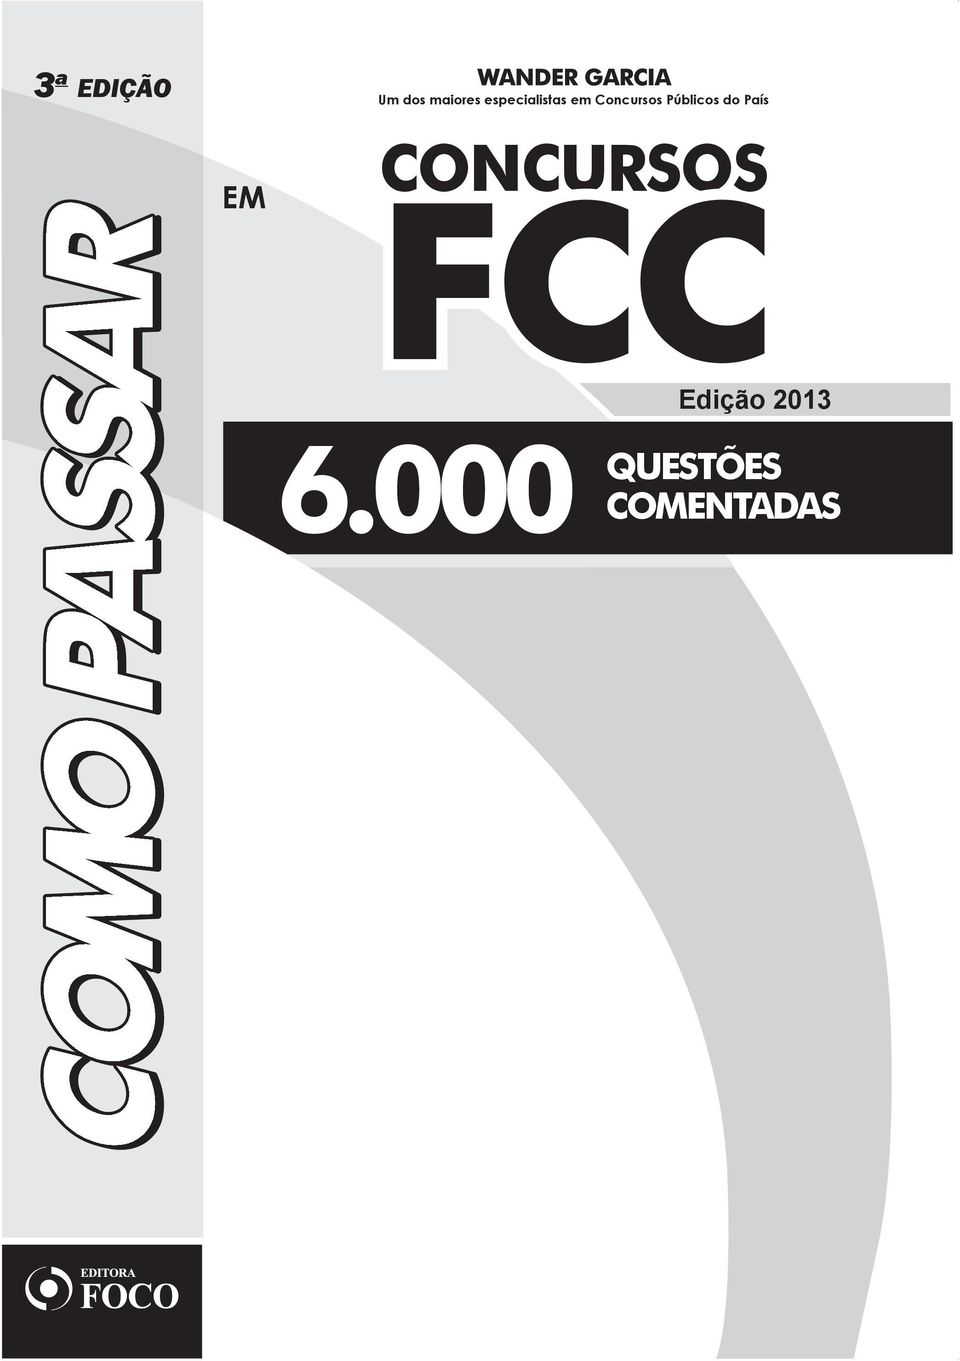 Públicos do País CONCURSOS FCC